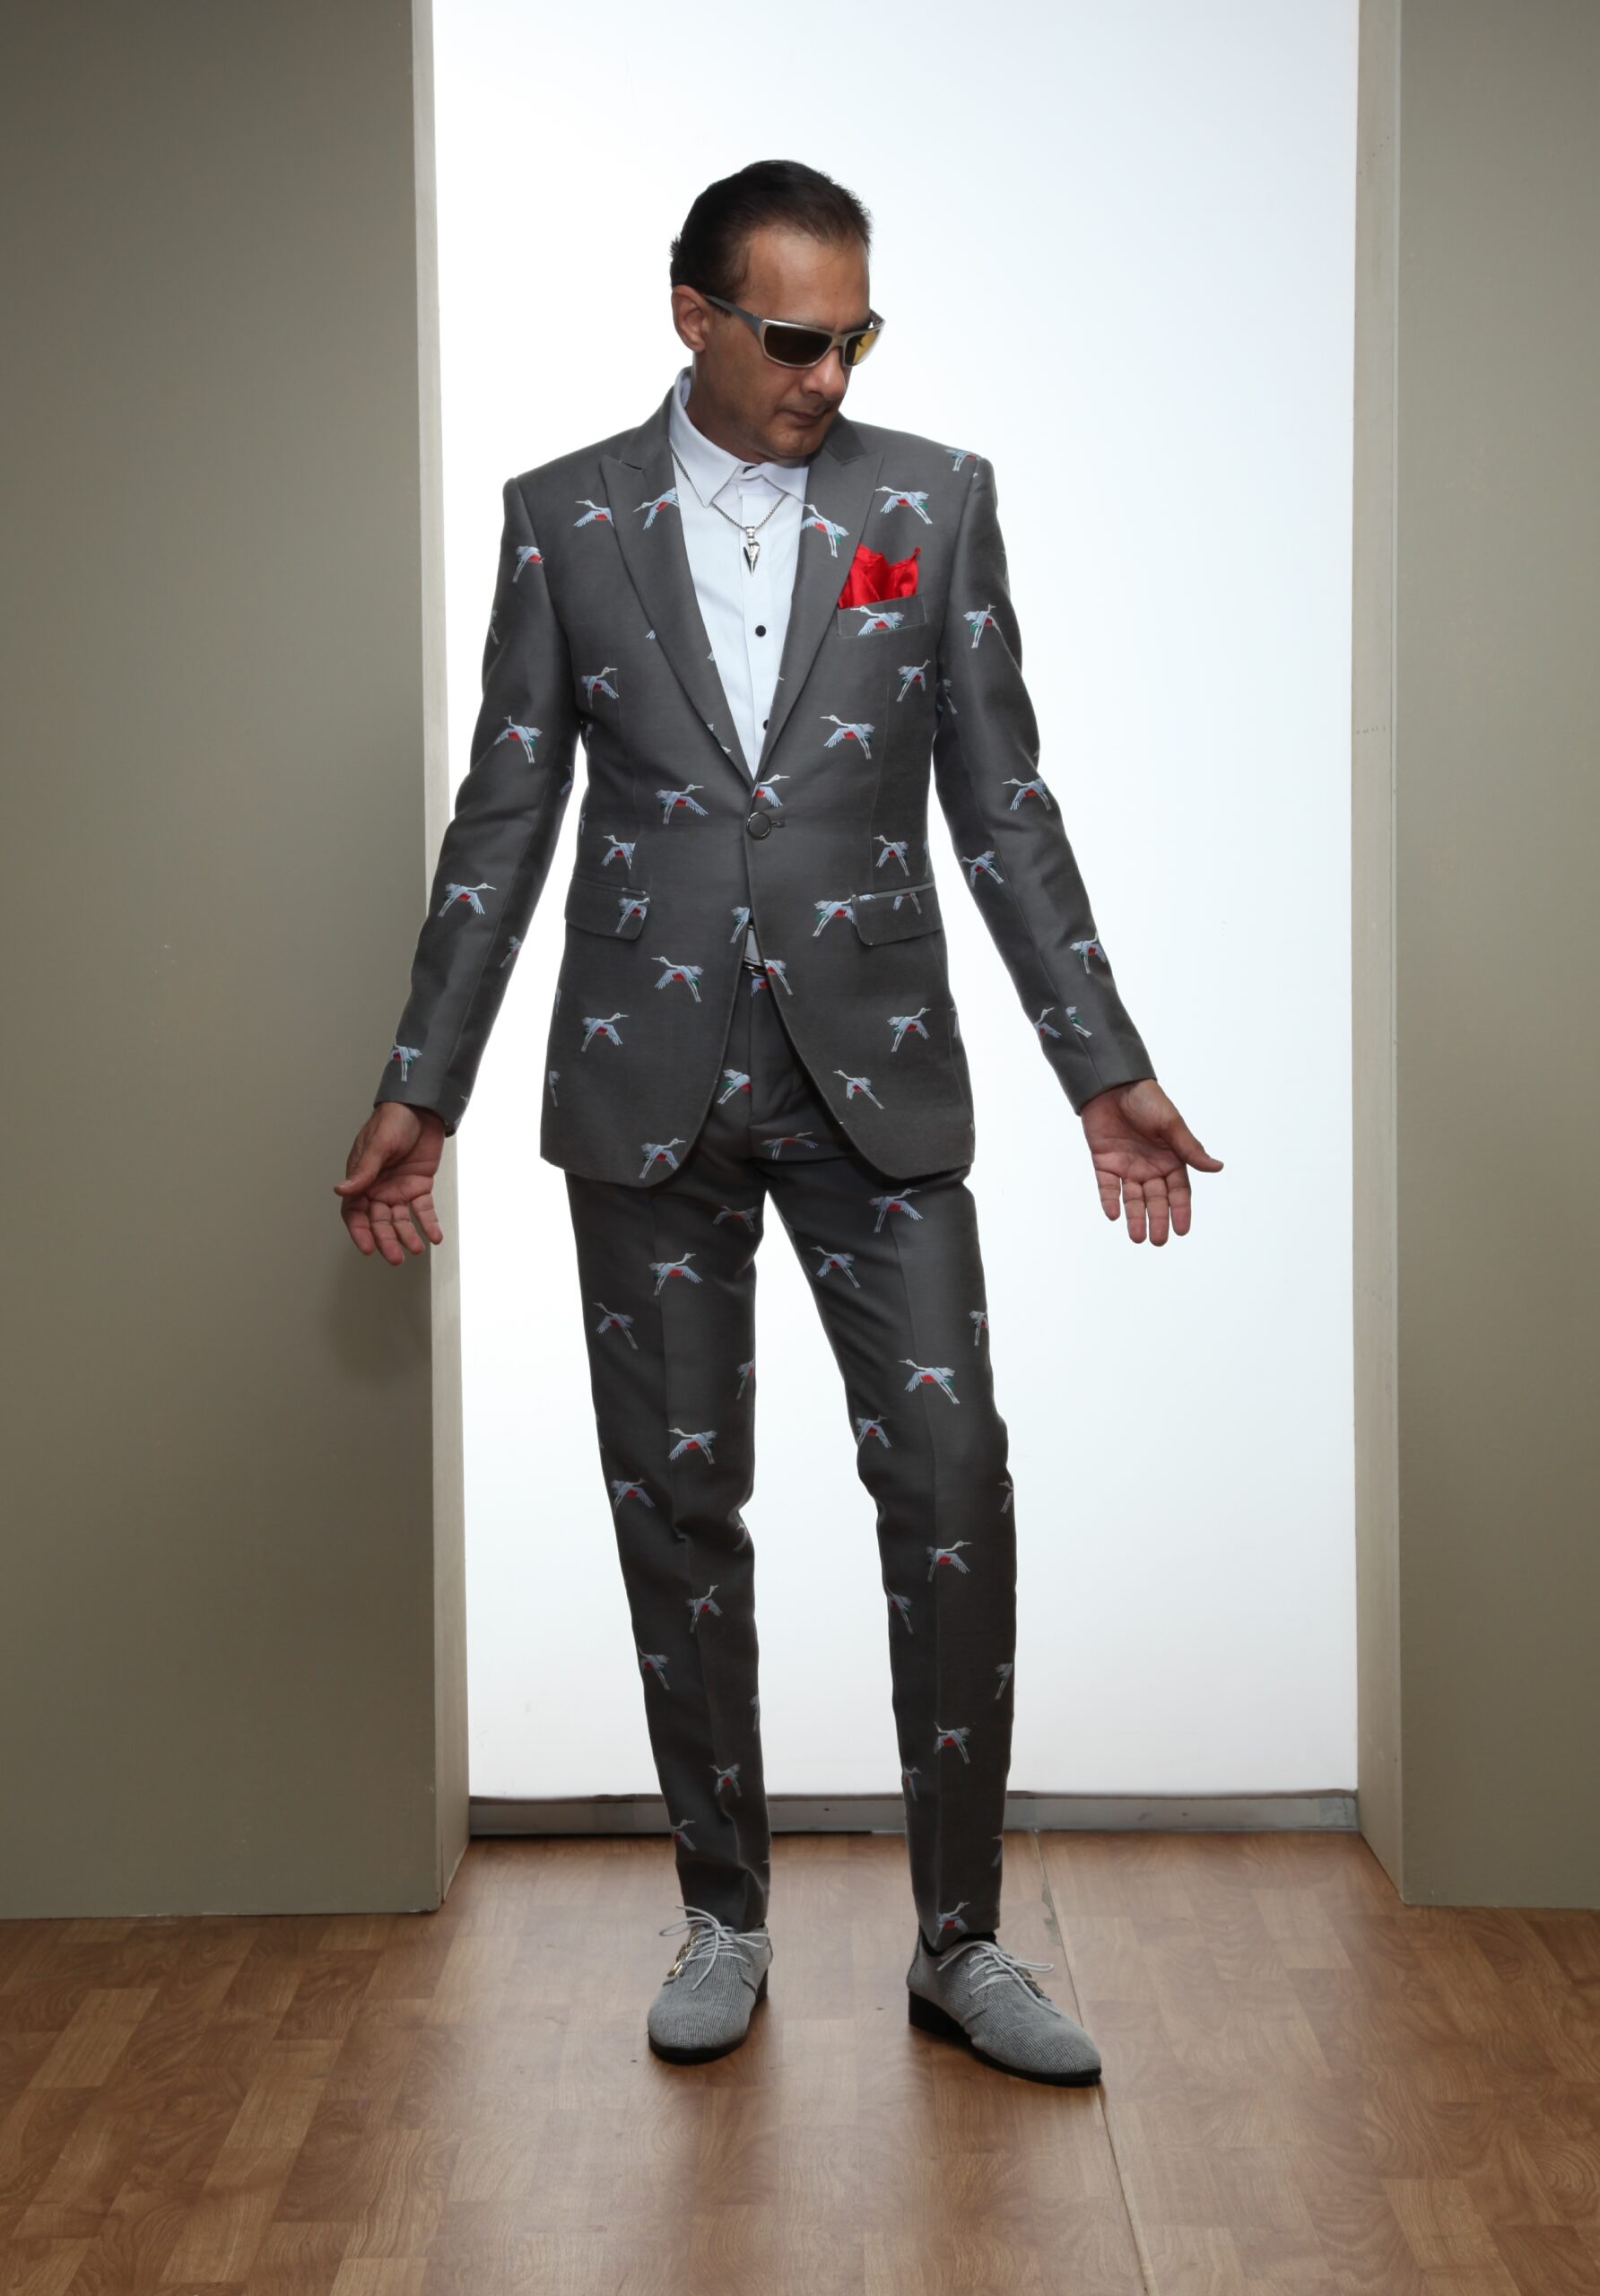 MST-5009-01-rent_rental_hire_tuxedo_suit_black_tie_suit_designer_suits_shop_tailor_tailors_singapore_wedding